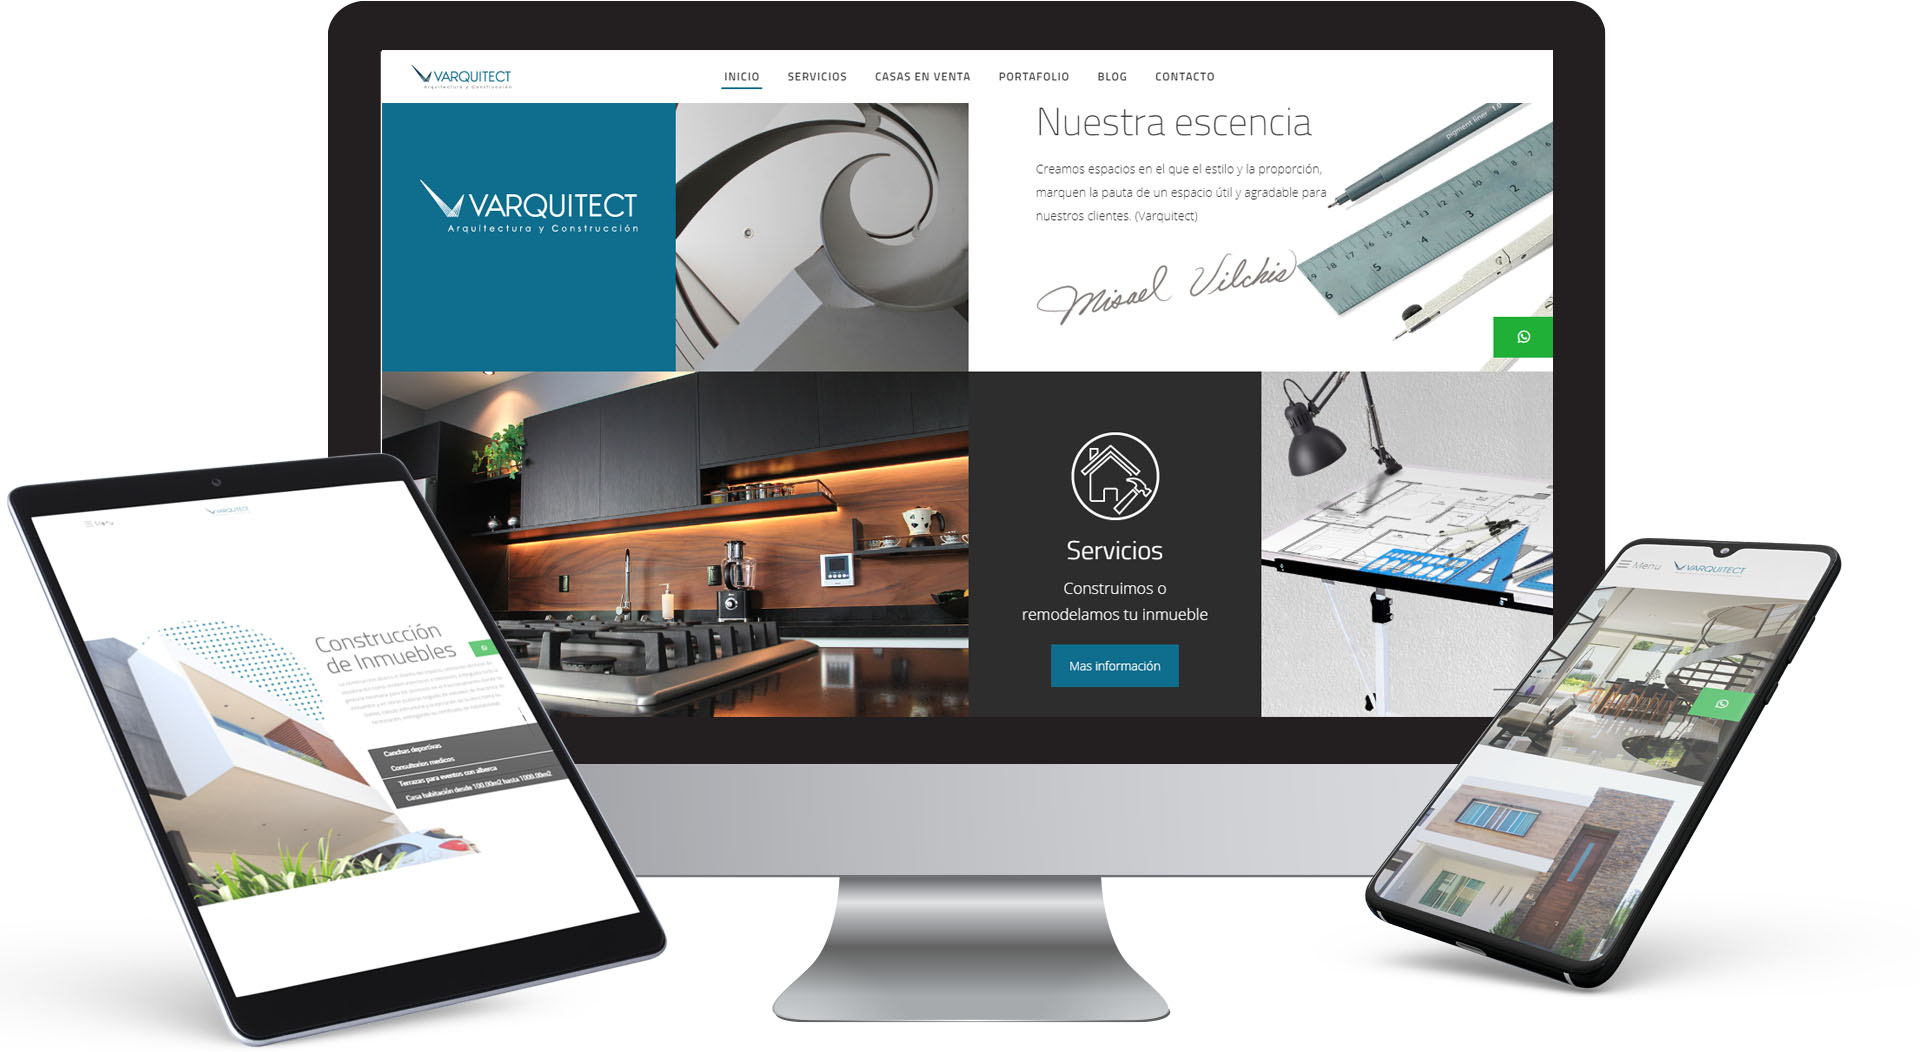 Vistas del sitio web de Varquitect